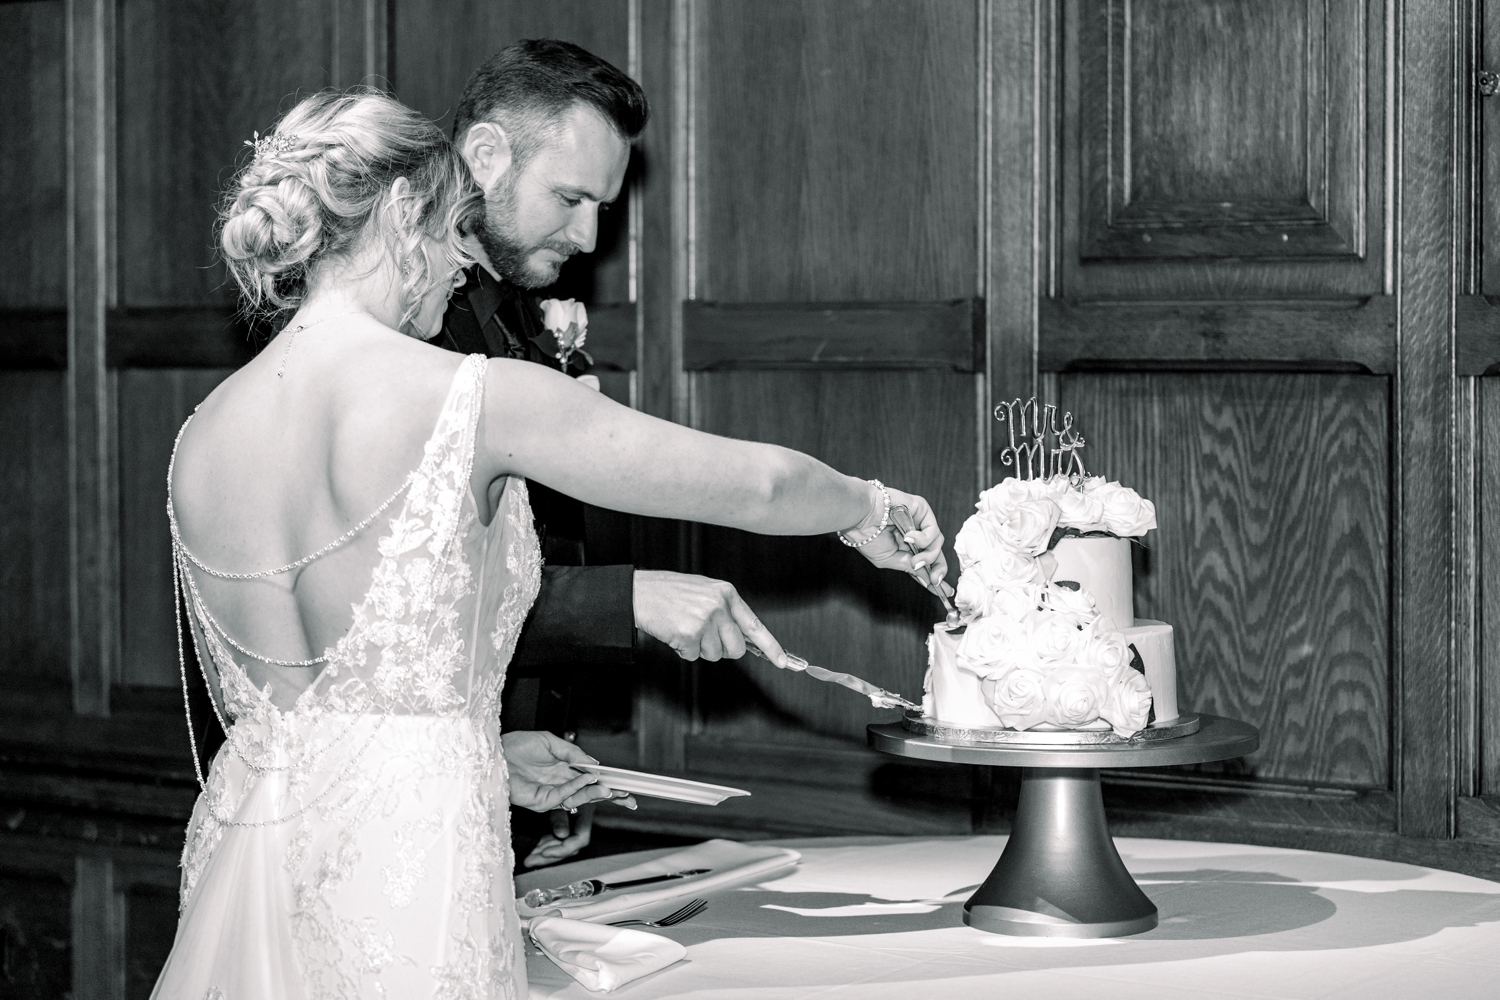 Bride and Groom Cutting Cake at The Cincinnati Club Wedding Reception